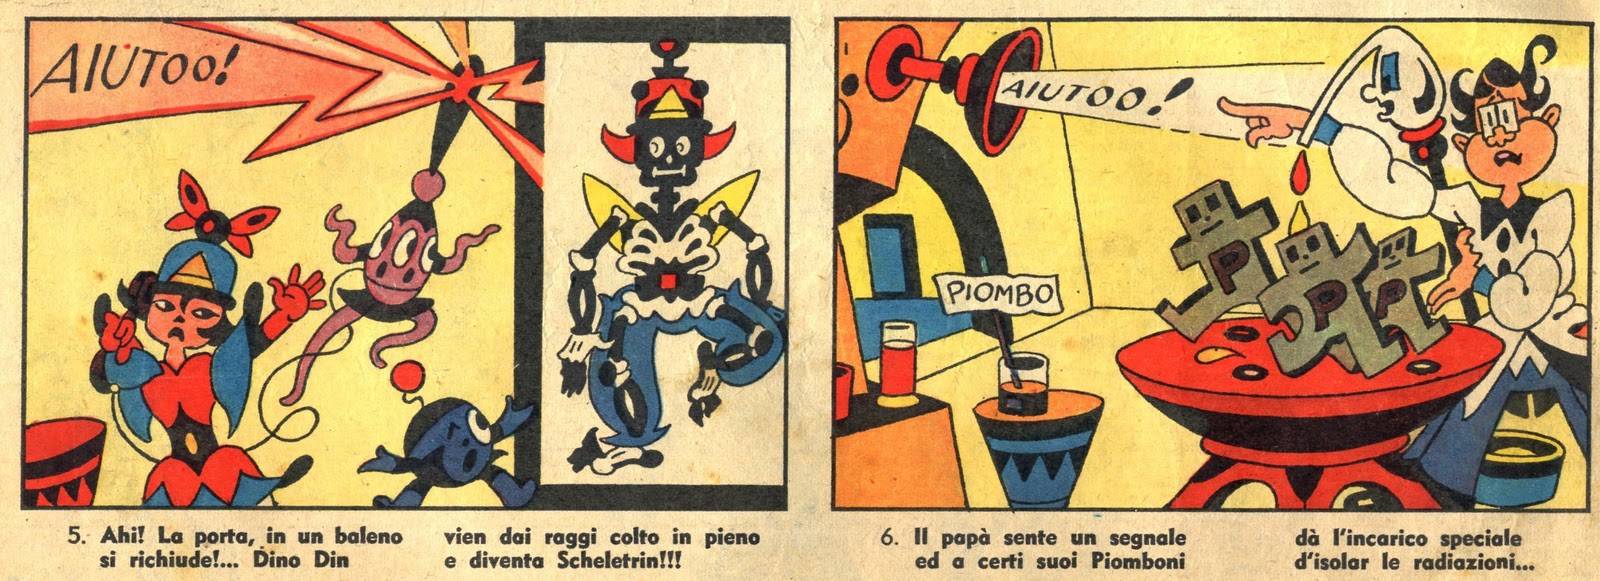 Corriere dei Piccoli - 1956 - 01 - Rubino 2a